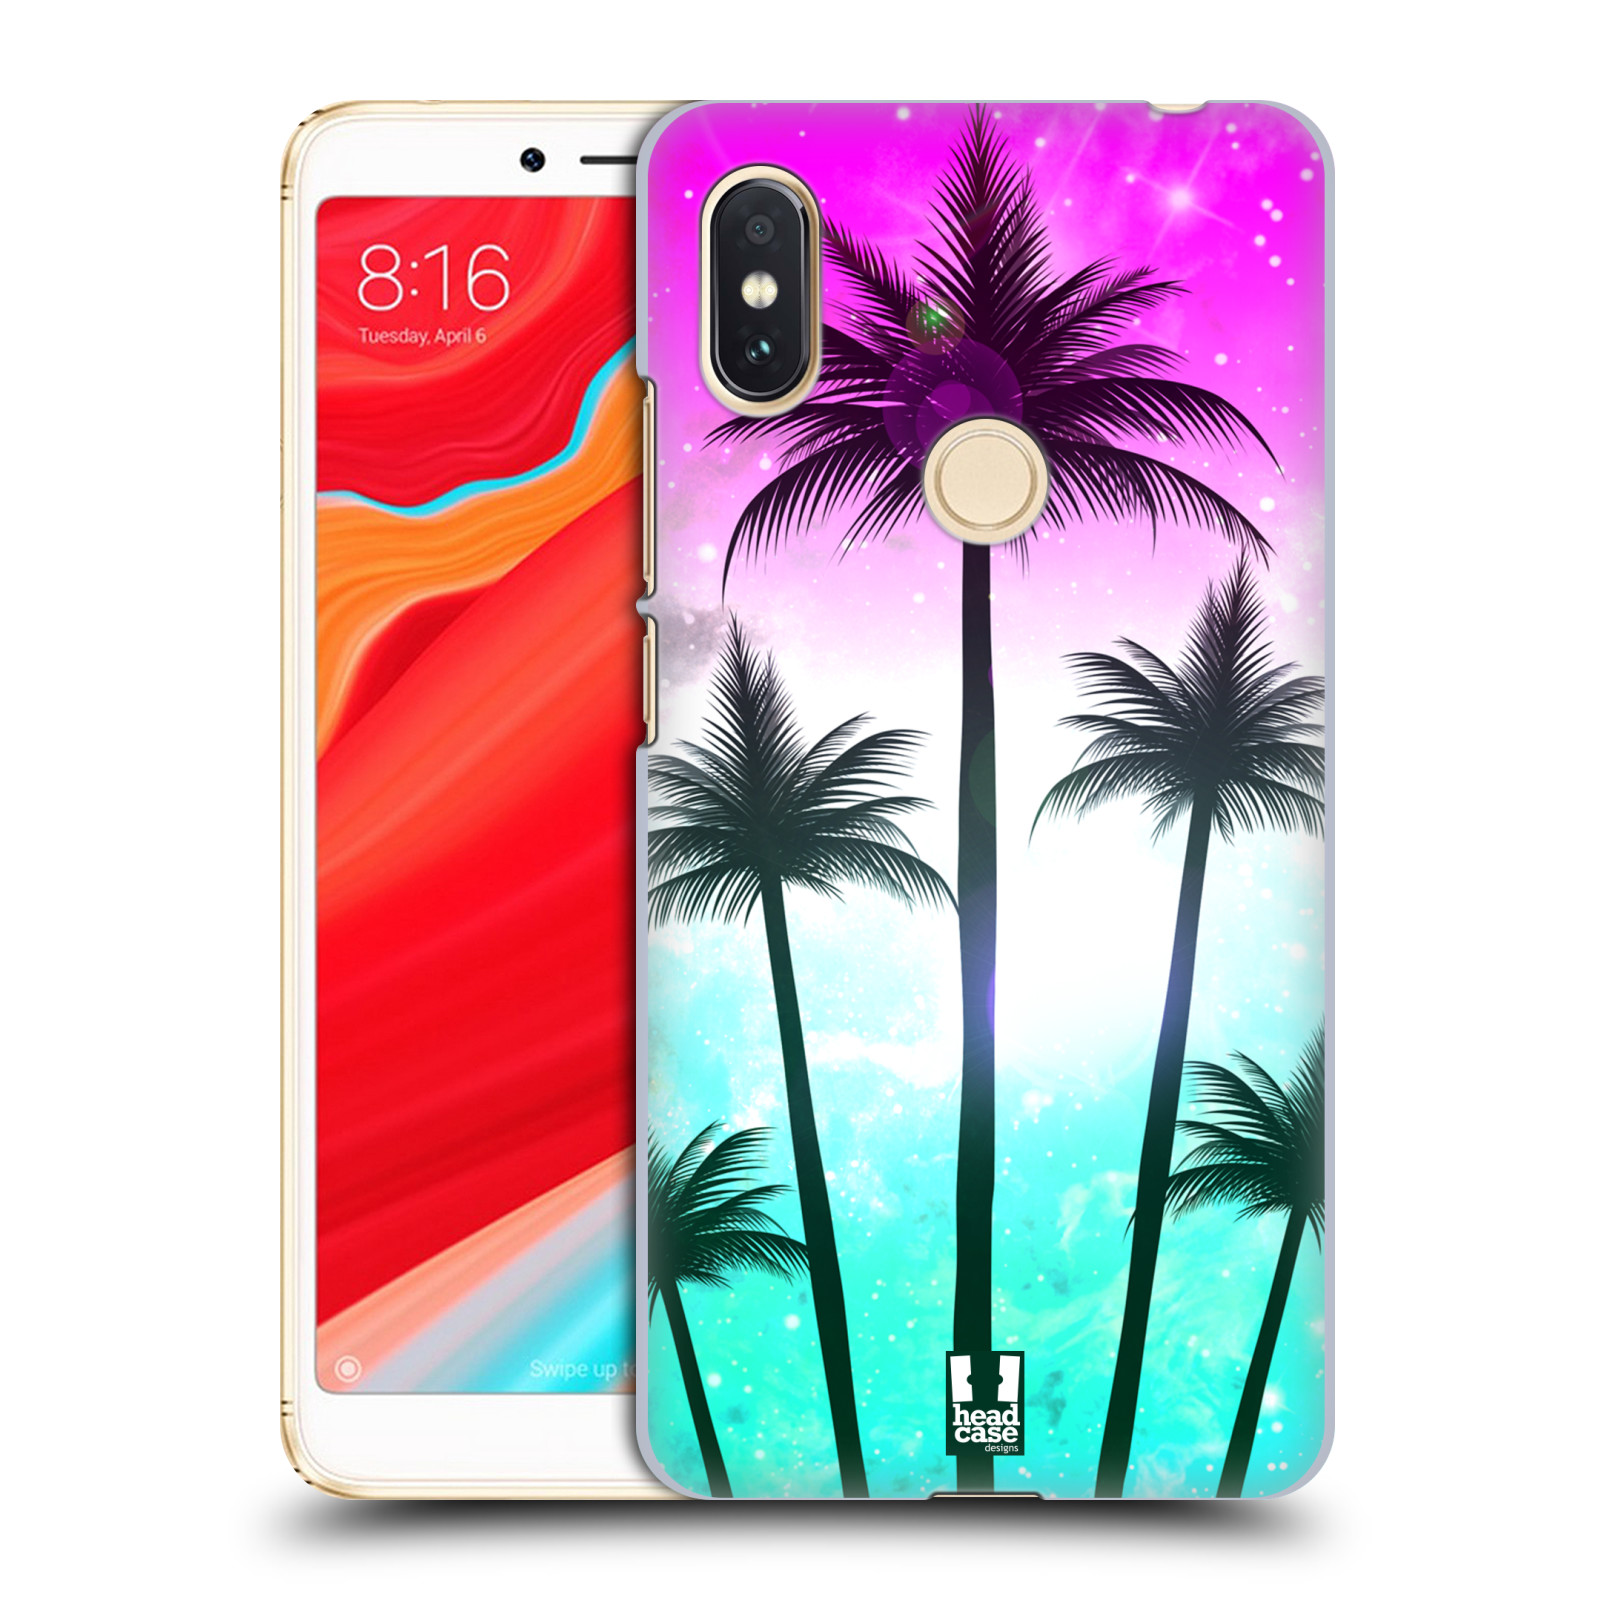 HEAD CASE plastový obal na mobil Xiaomi Redmi S2 vzor Kreslený motiv silueta moře a palmy RŮŽOVÁ A TYRKYS